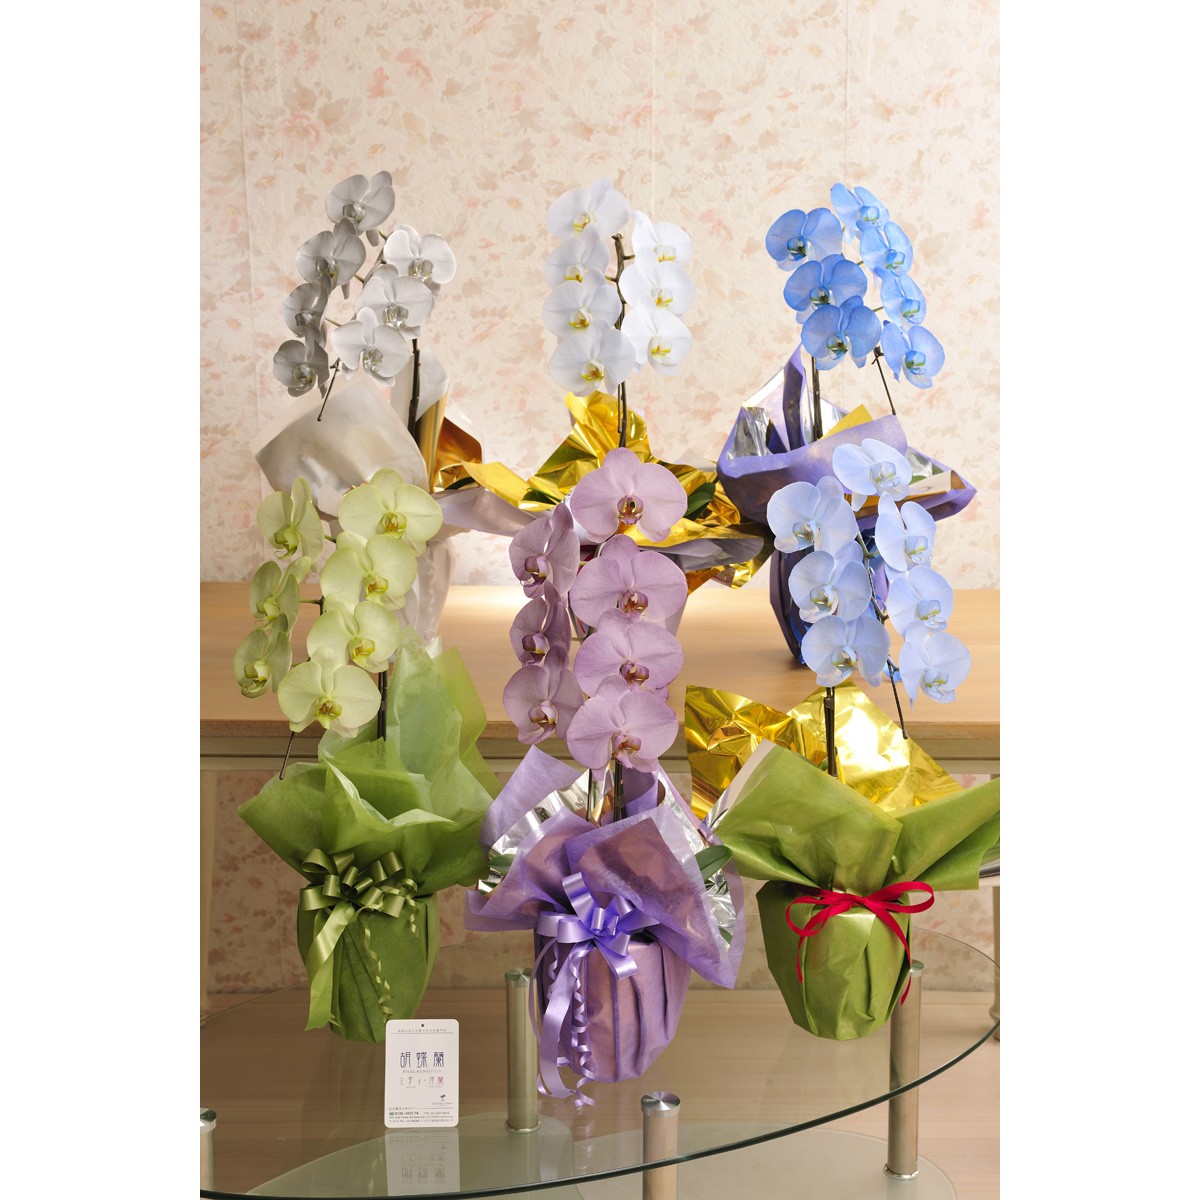  цветок . подарок. комплект можно выбрать цветок цвет. цвет . бабочка орхидея .- irodori - 1 шт. .( холод цвет серия ). товар талон (Amazon подарочный сертификат 3000 иен )[ стоимость доставки * карта * упаковка бесплатный ]